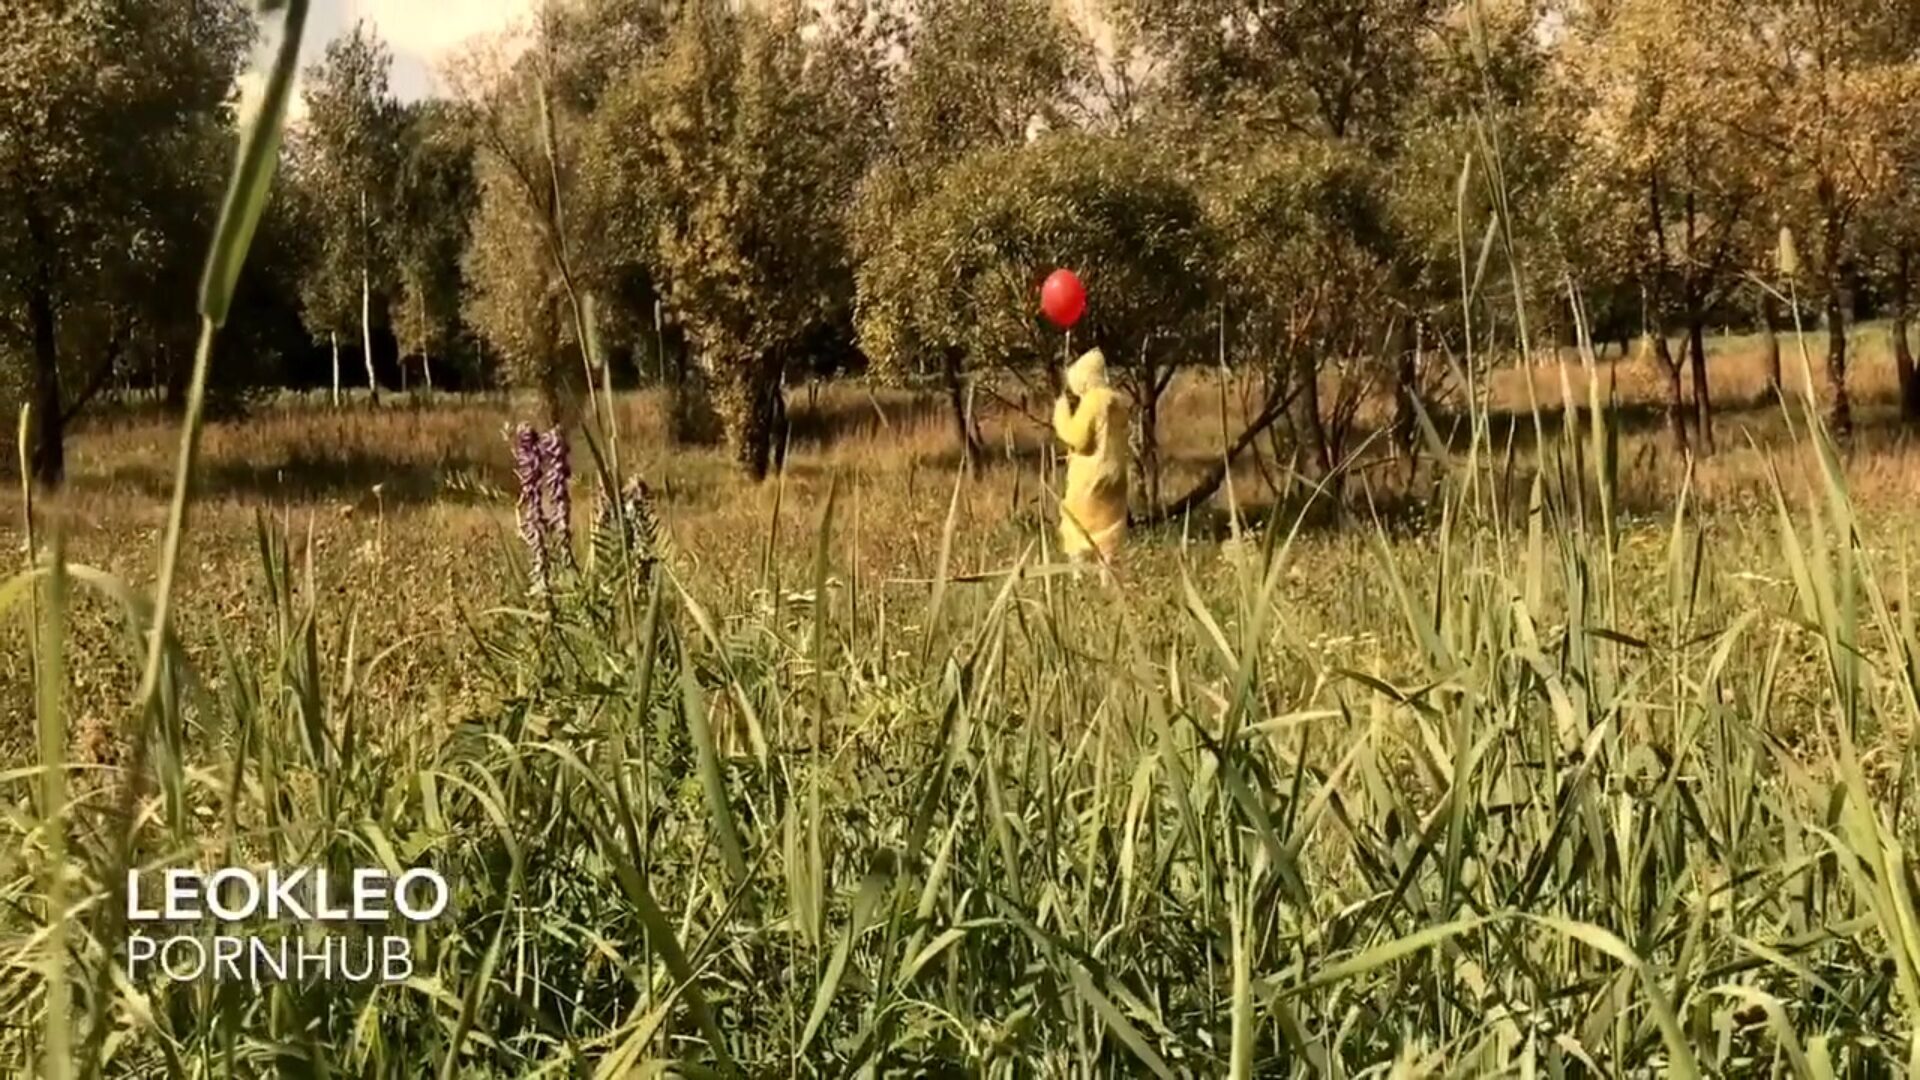 beverly marsh fuck offentligt utomhus av clown pennyvis teen cosplay leokleo